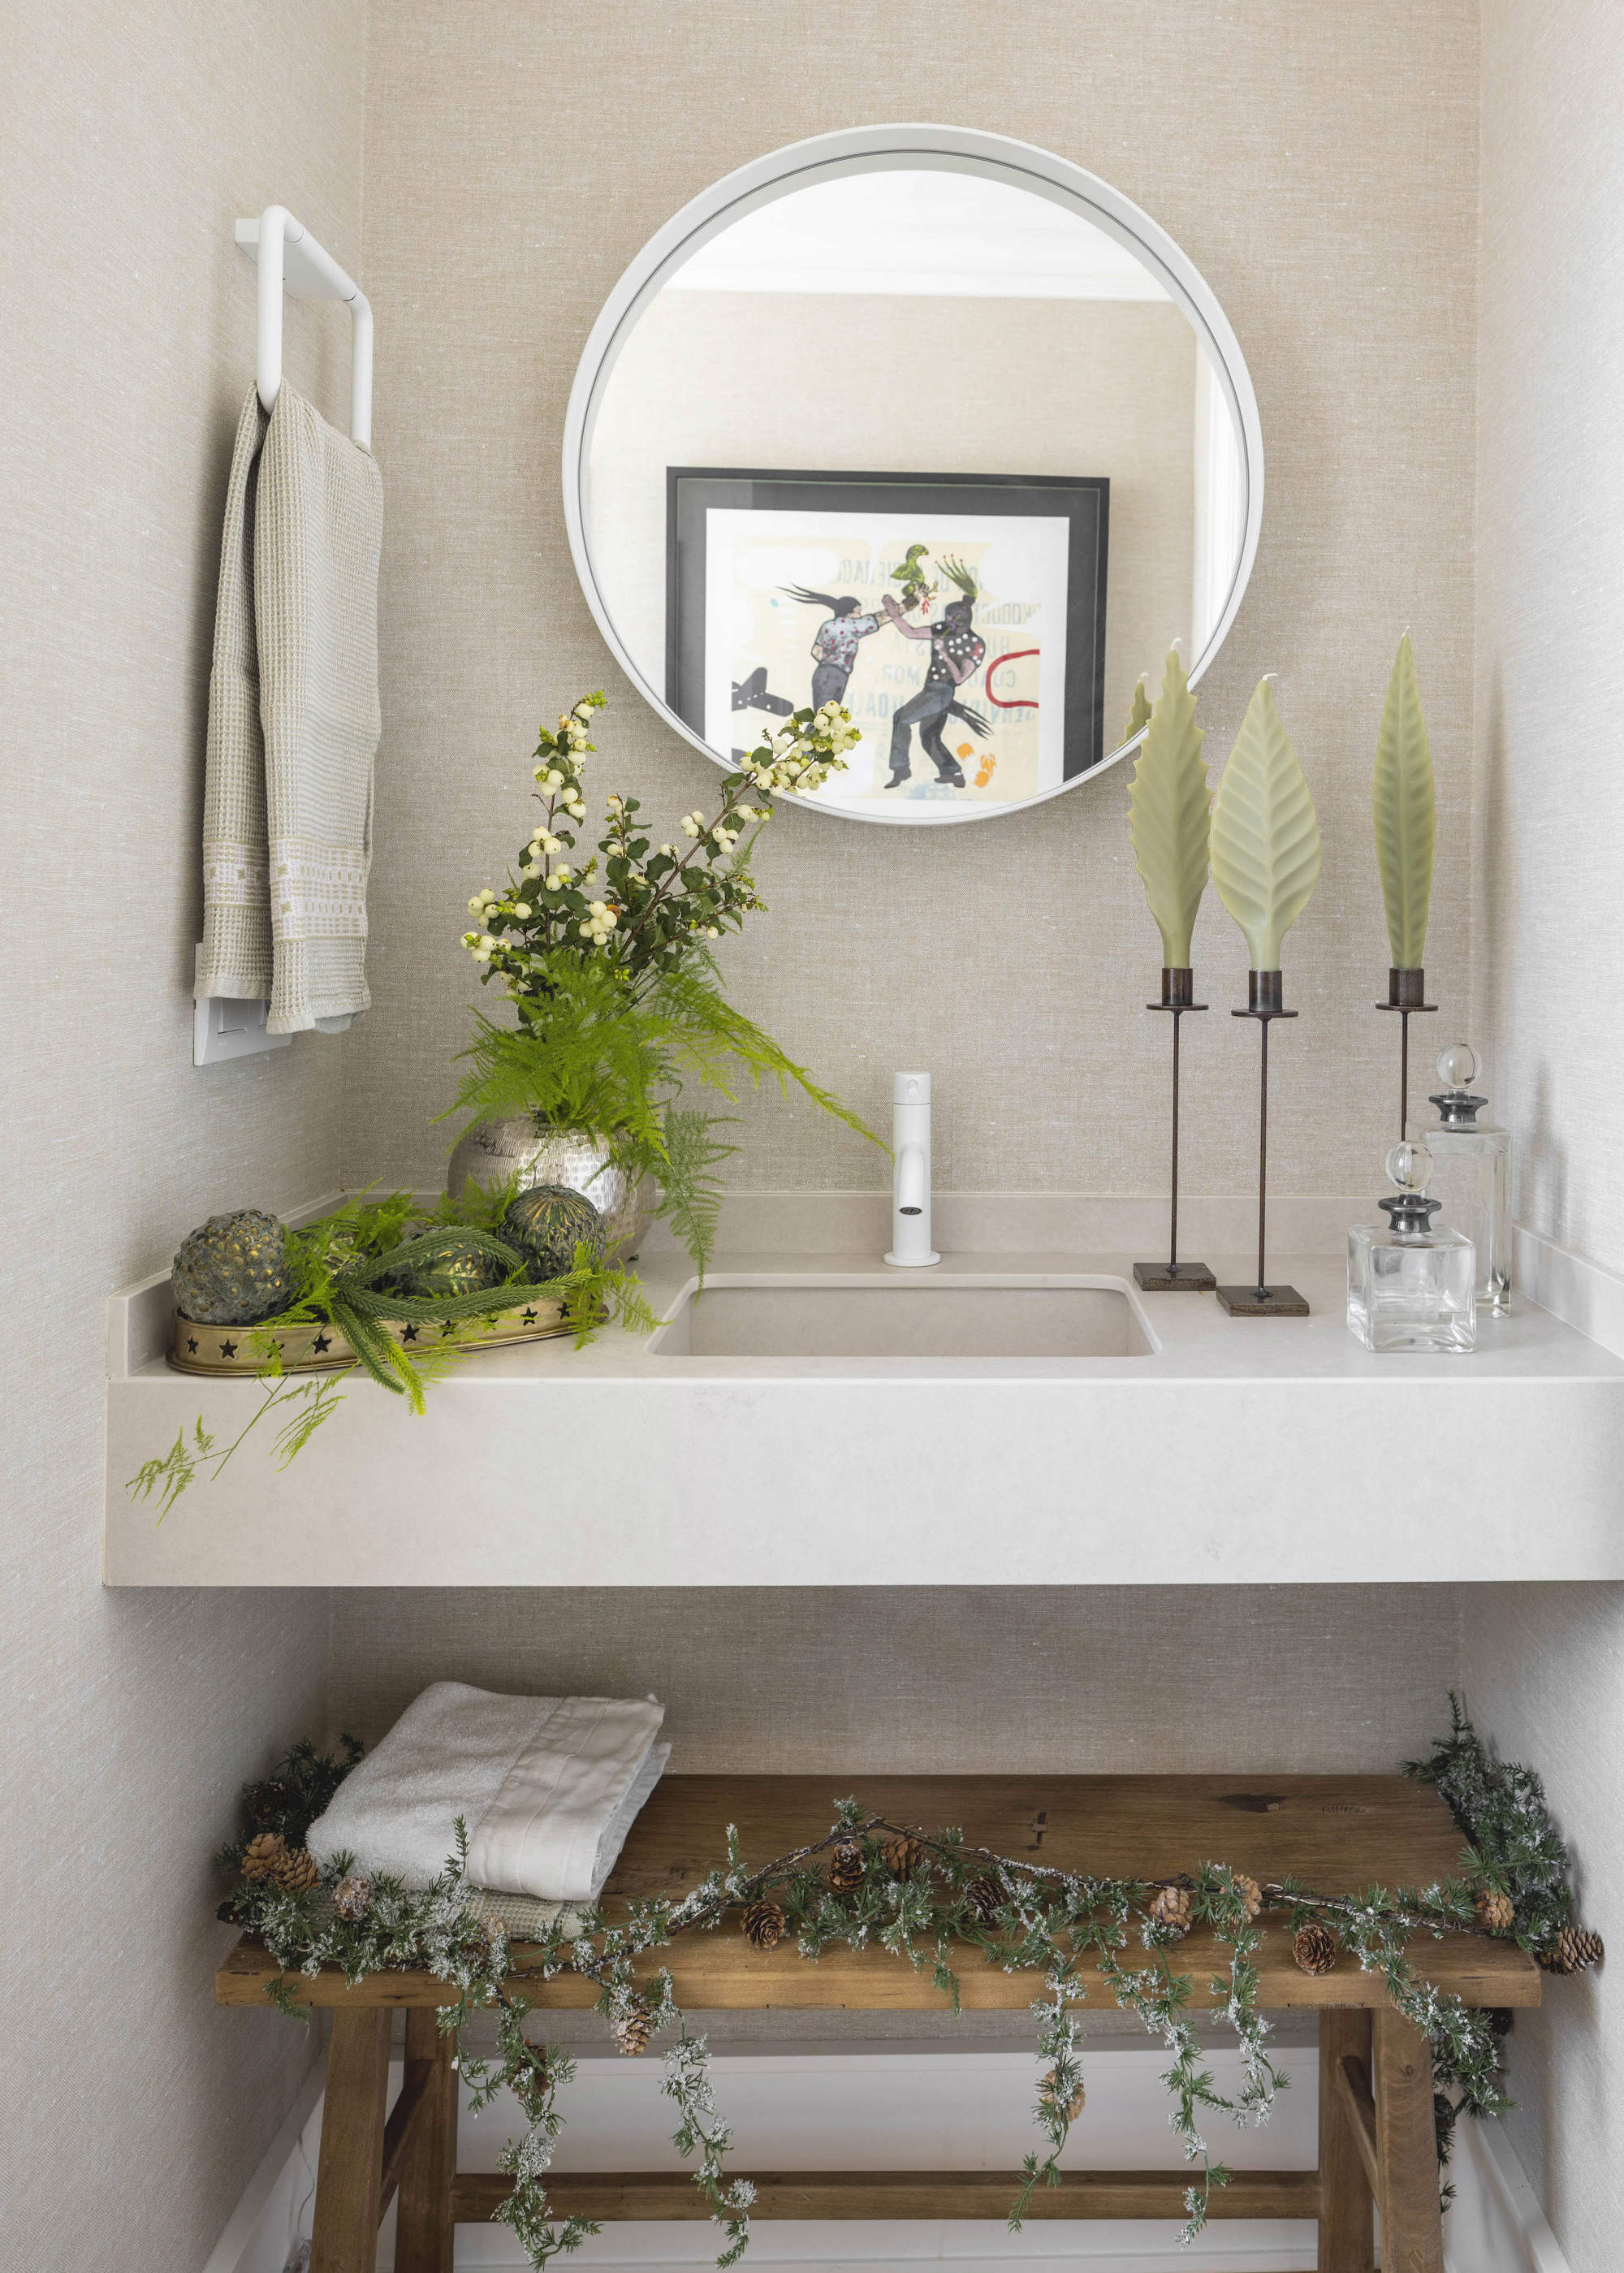 Baño decorado con elementos vegetales de estilo natural, banqueta de madera, espejo redondo.